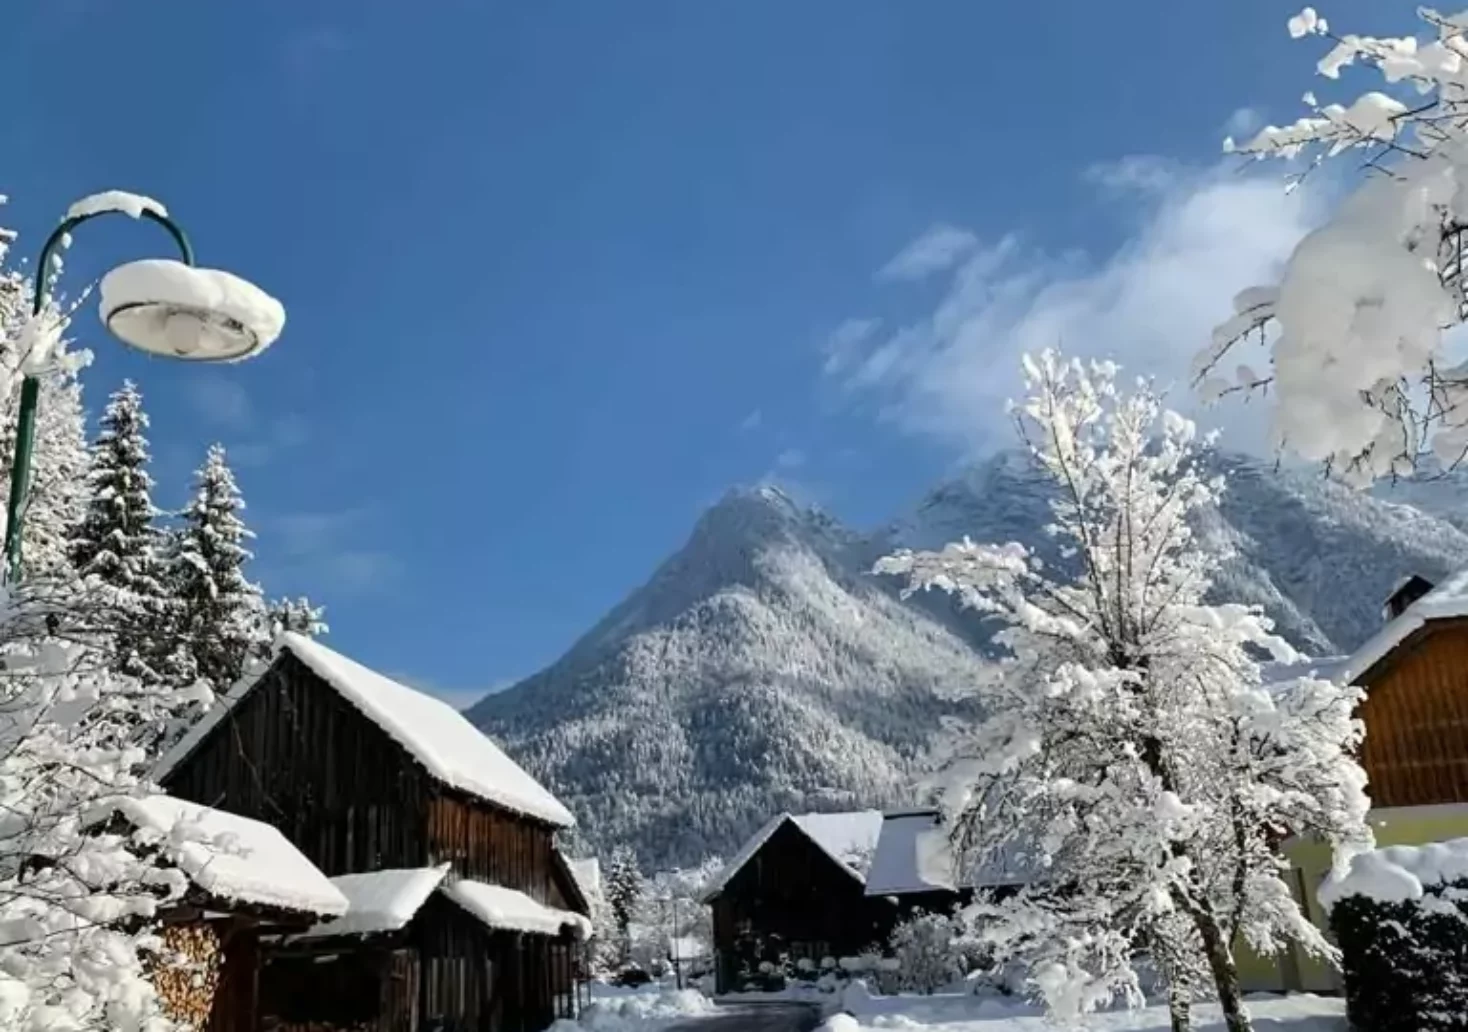 Bild auf 5min.at zeigt eine verschneite Winterlandschaft in Bad Goisern in Oberösterreich.